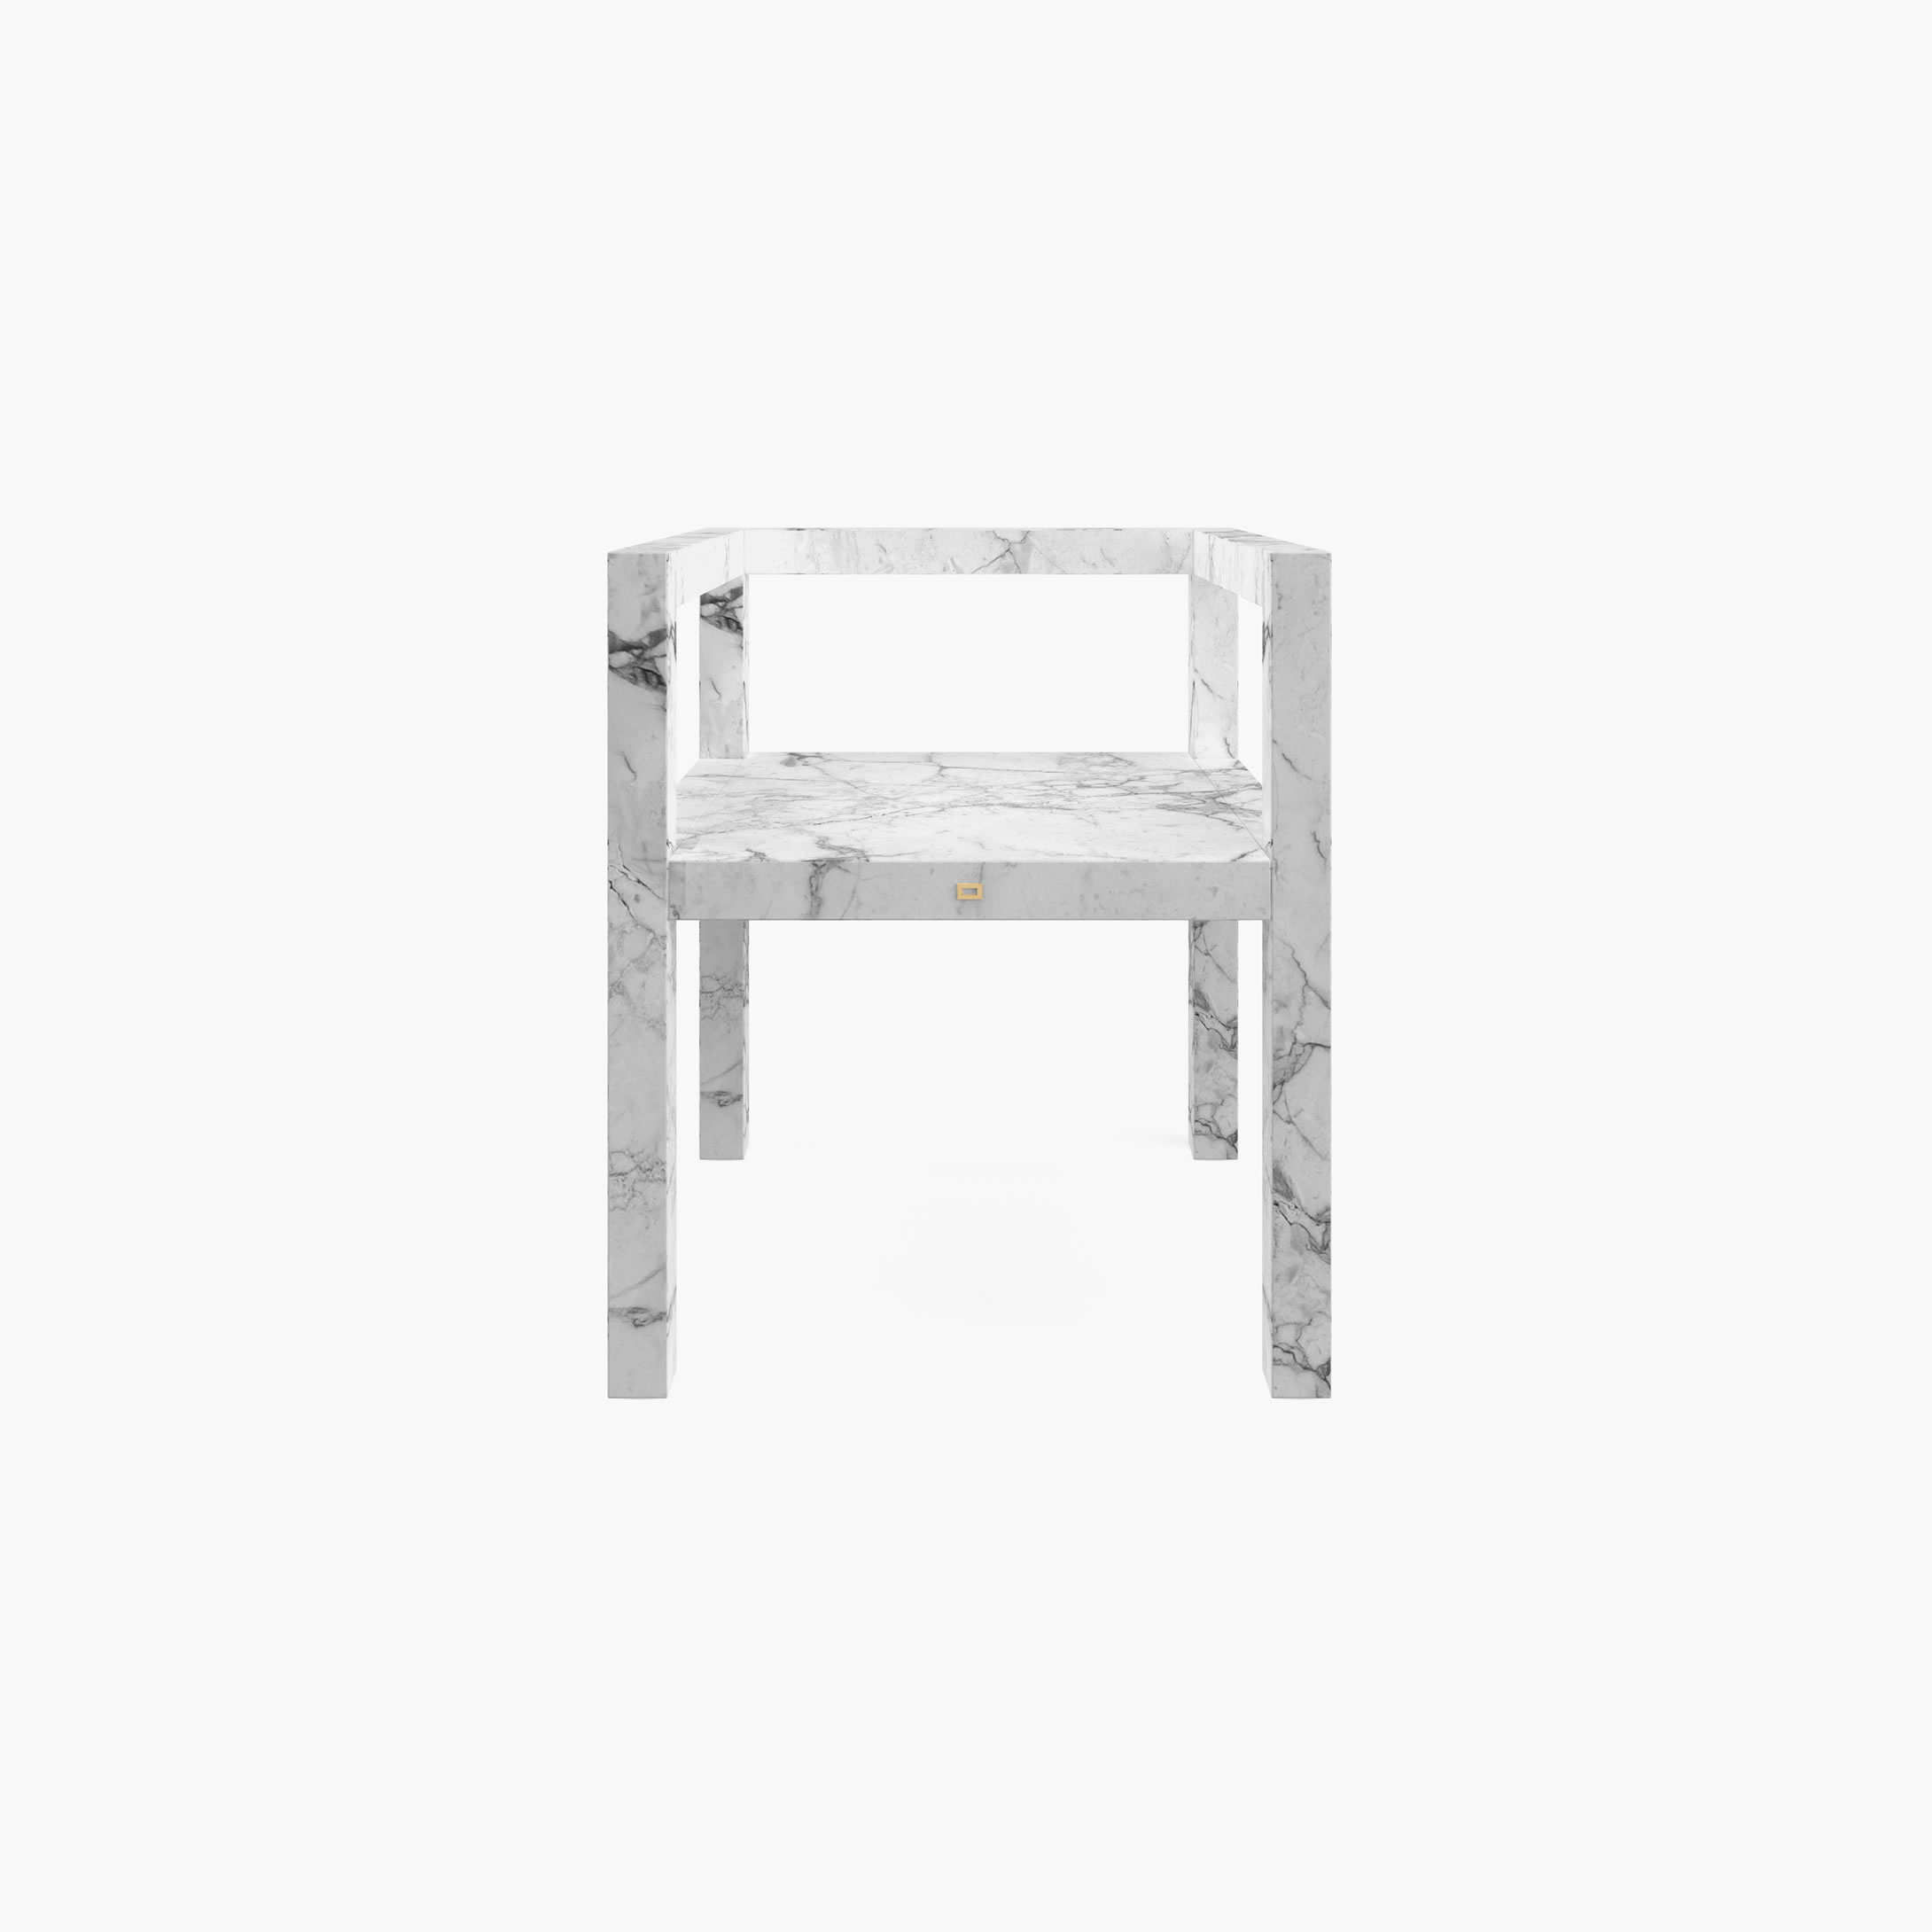 Stuhl mit Armlehnen aus quadratischen Riegeln Weiss Arabescato Marmor minimalistisch Esszimmer Innenarchitektur Stuehle FS 424 FELIX SCHWAKE